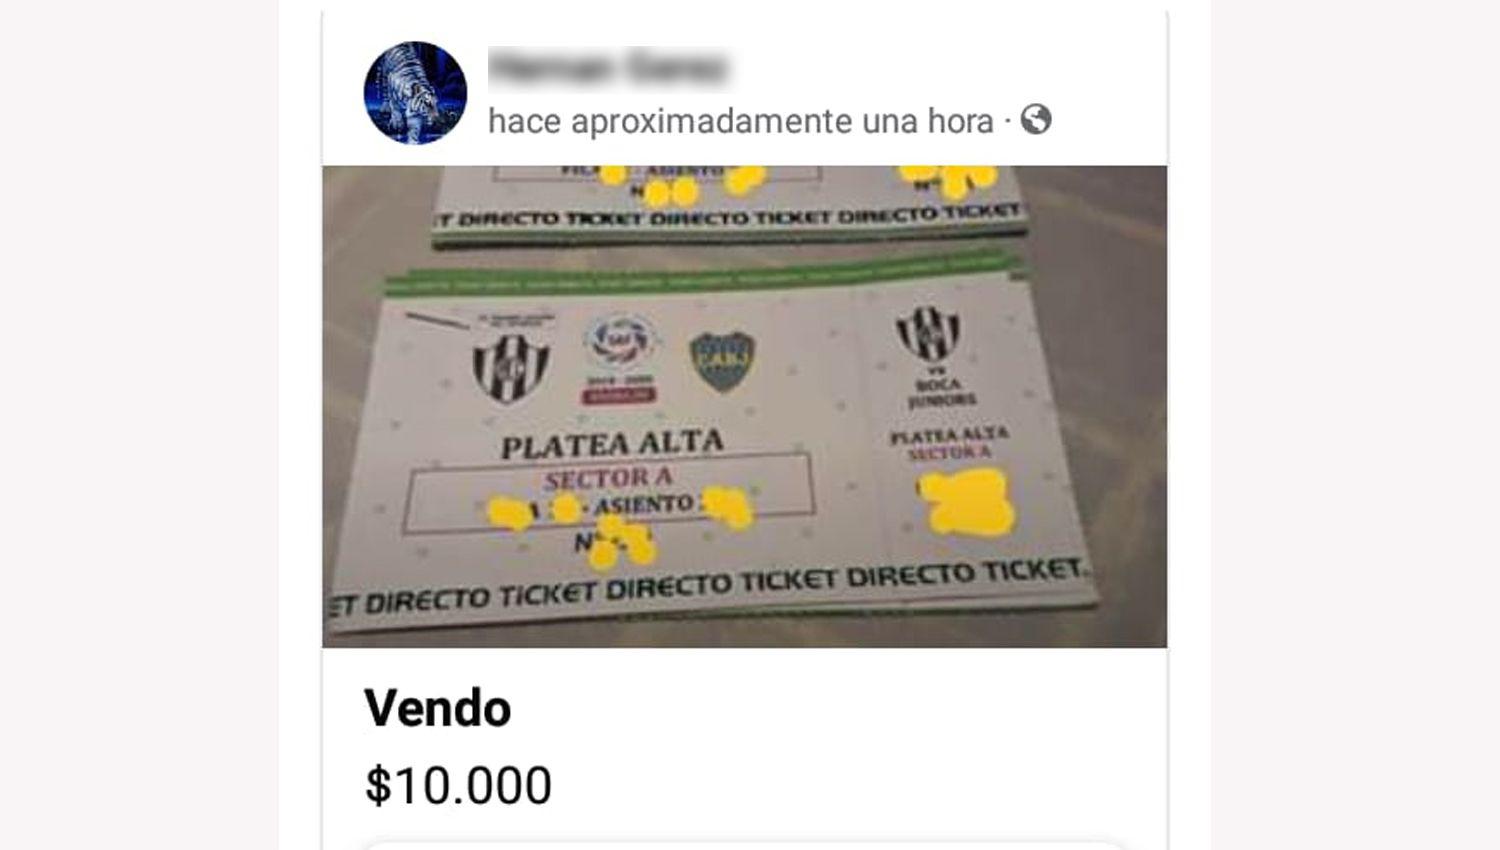 Ofrecen entradas para Central Coacuterdoba vs Boca y los precios van de 5 a 10 mil pesos